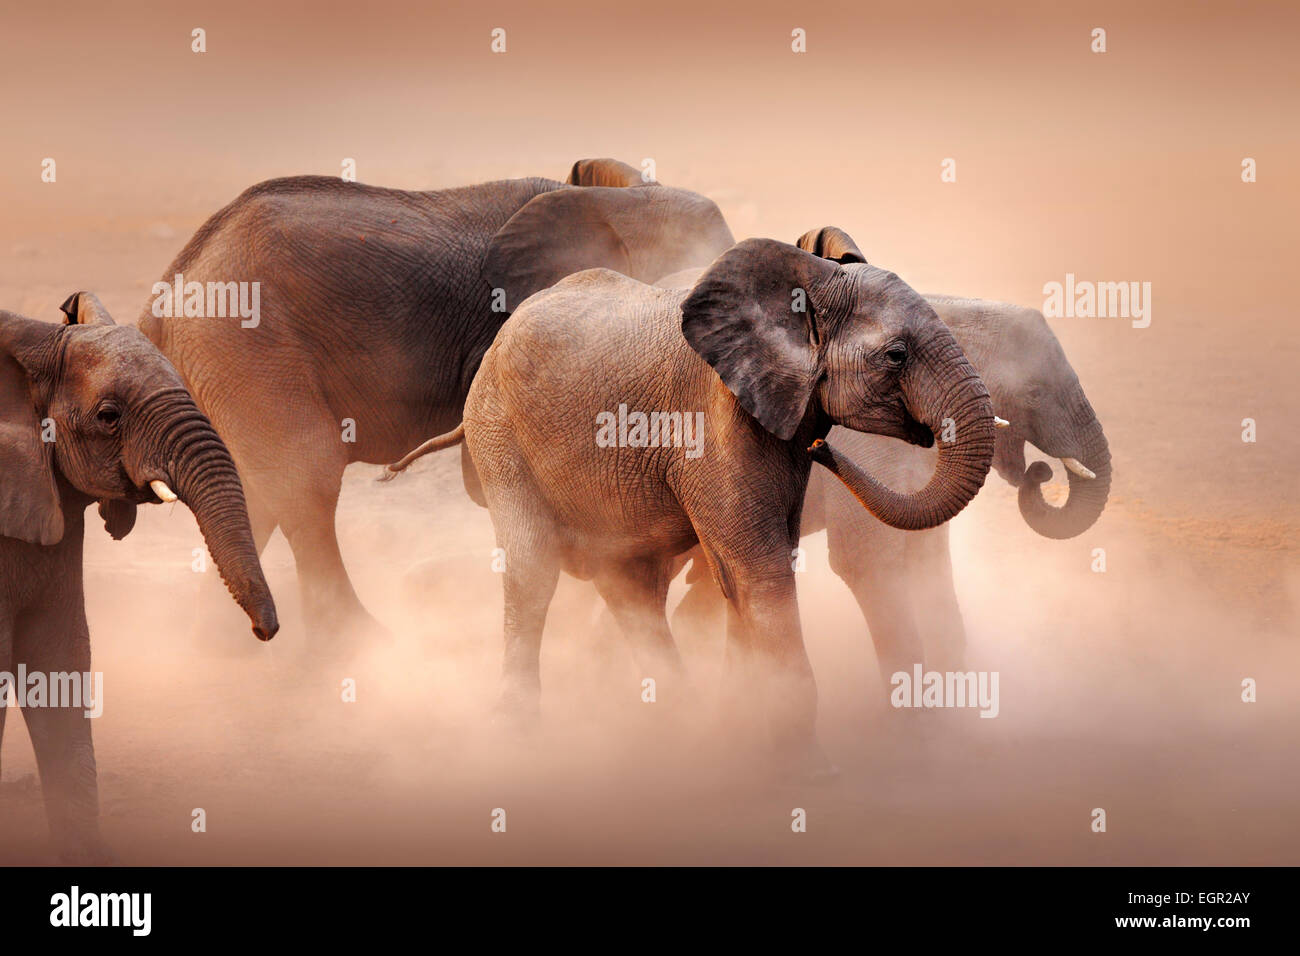 Disturbed elephants (Loxodonta africana) stirring dust in desert - Etosha National Park (Namibia) Stock Photo